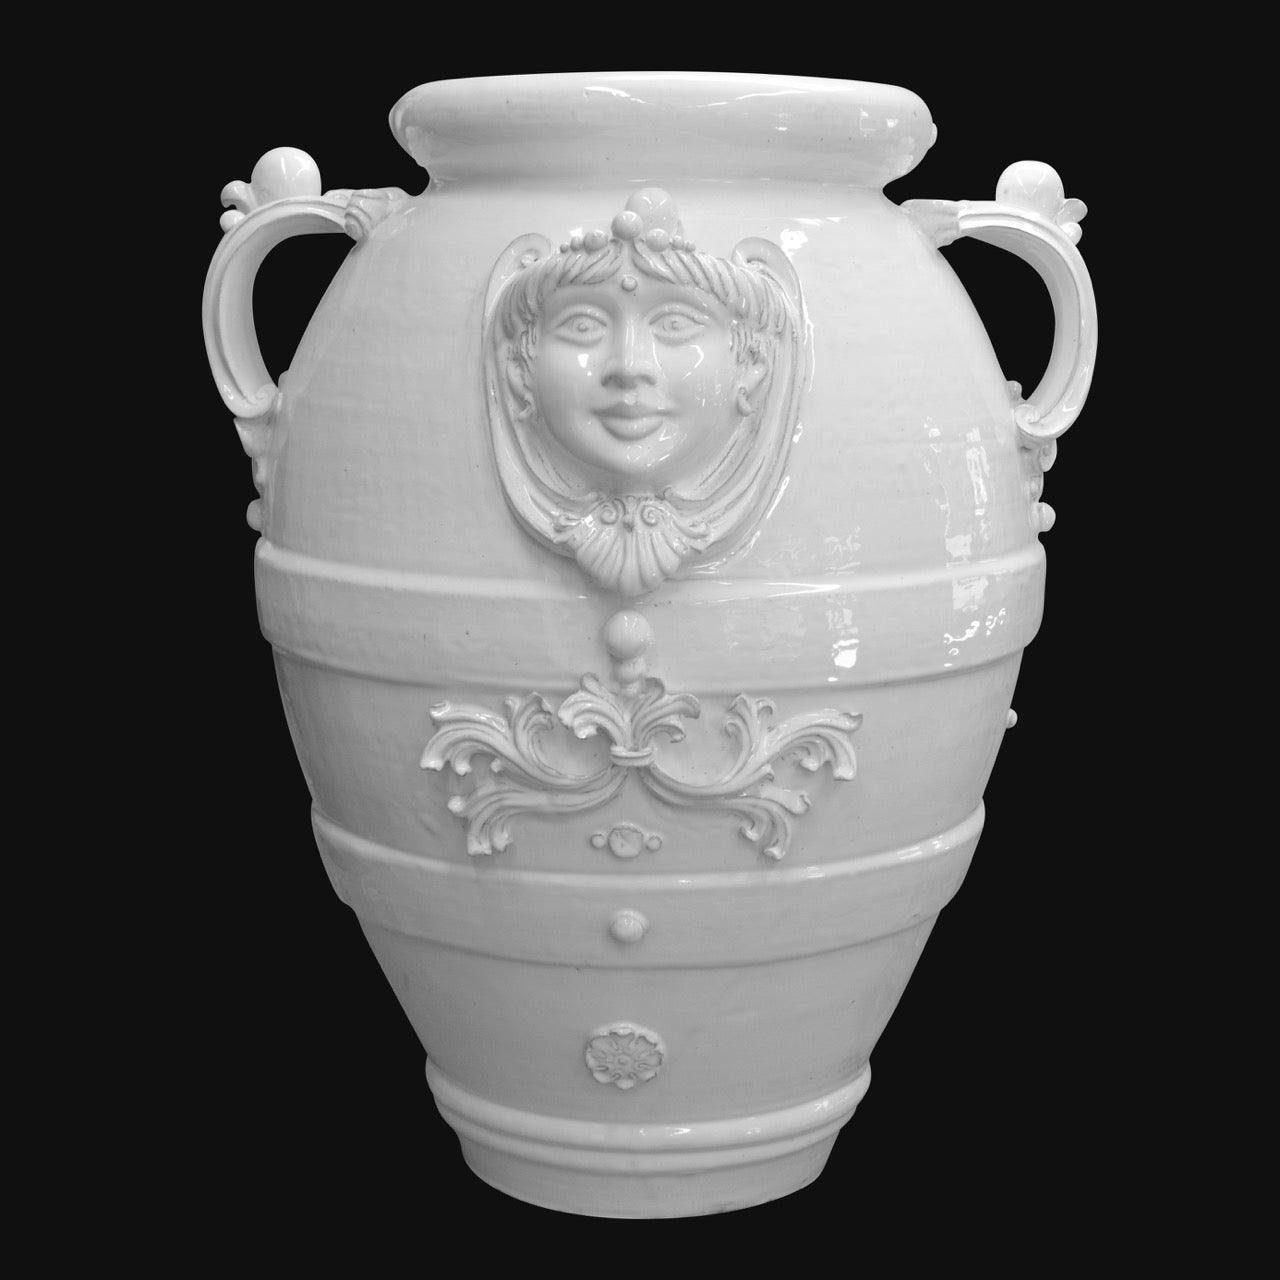 Giara c/testa Applicata in serie limitata h 67 white line - Ceramiche di Caltagirone Sofia